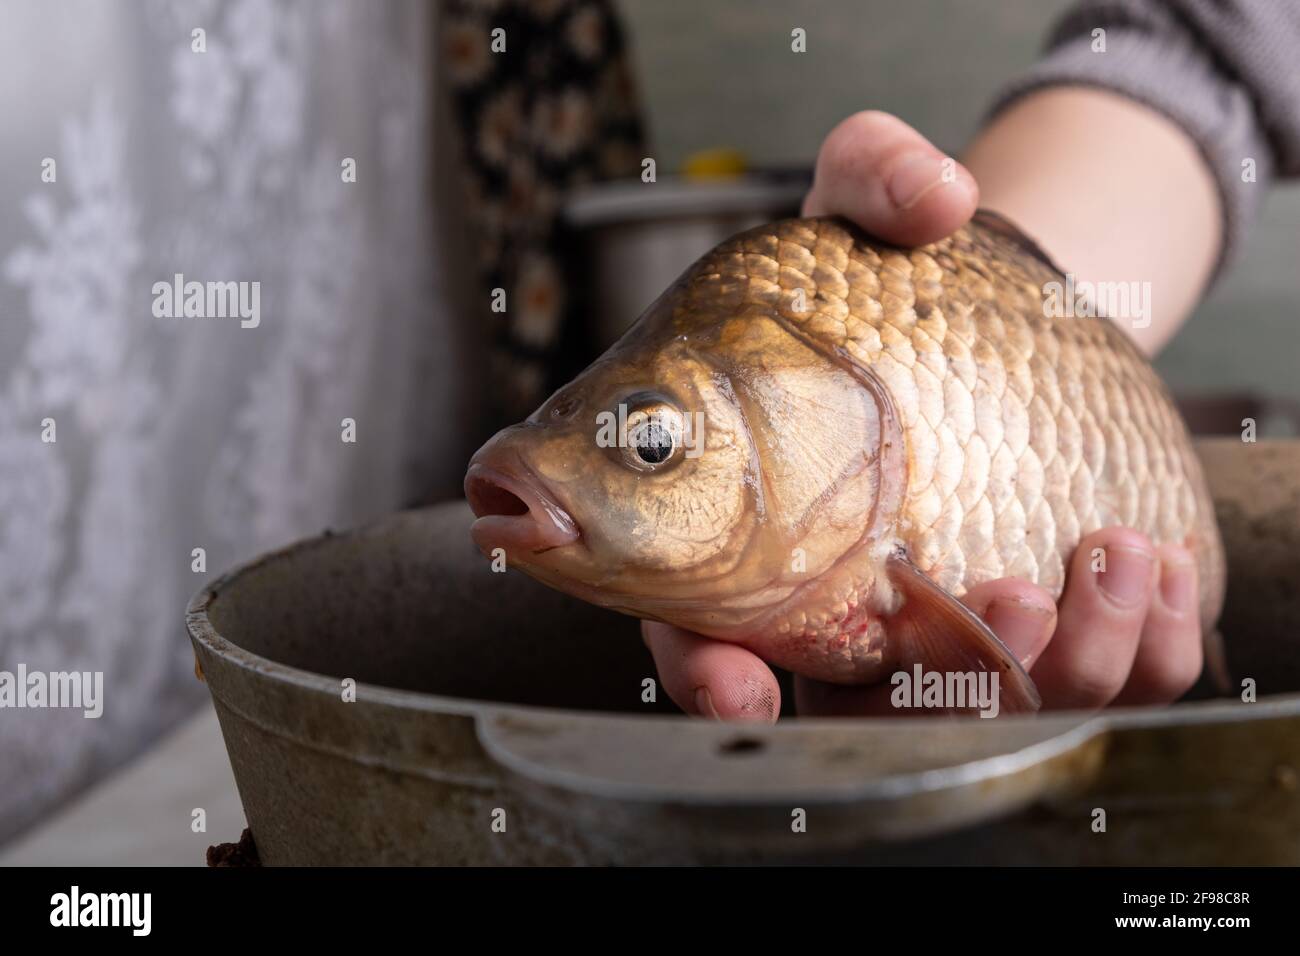 Live Karauschen in den Händen Nahaufnahme, Kochen Fisch. Stockfoto